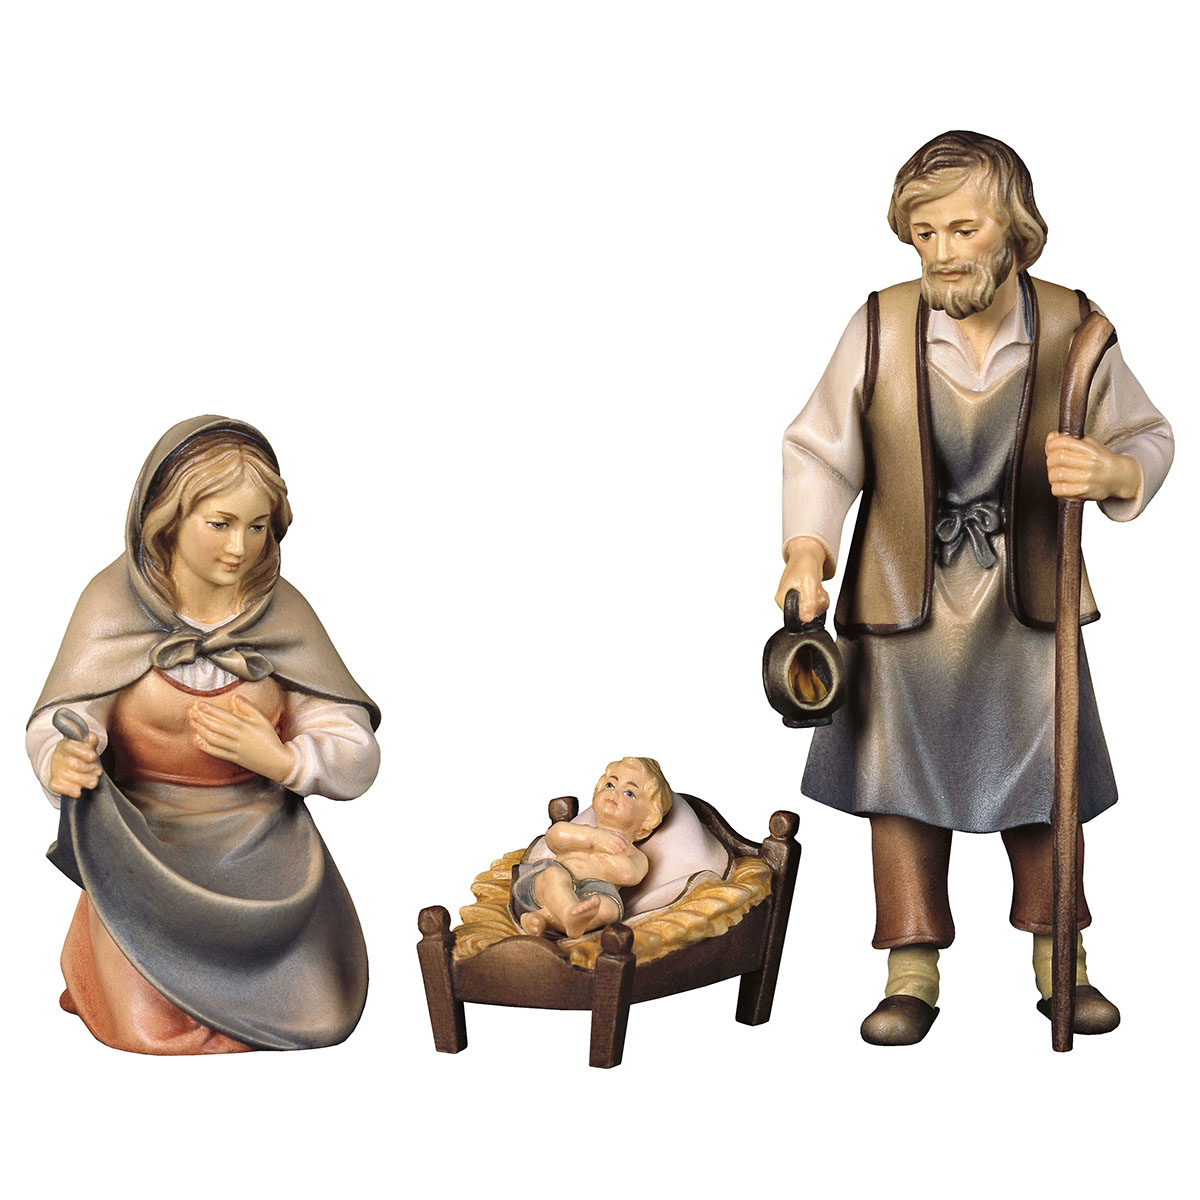 Frontansicht von der Heiligen Familie aus der Krippenfigurenserie "Original Hirten Krippe". Entworfen vom Holzschnitzer Ulrich Perathoner. Aus Ahornholz geschnitzt und handbemalt